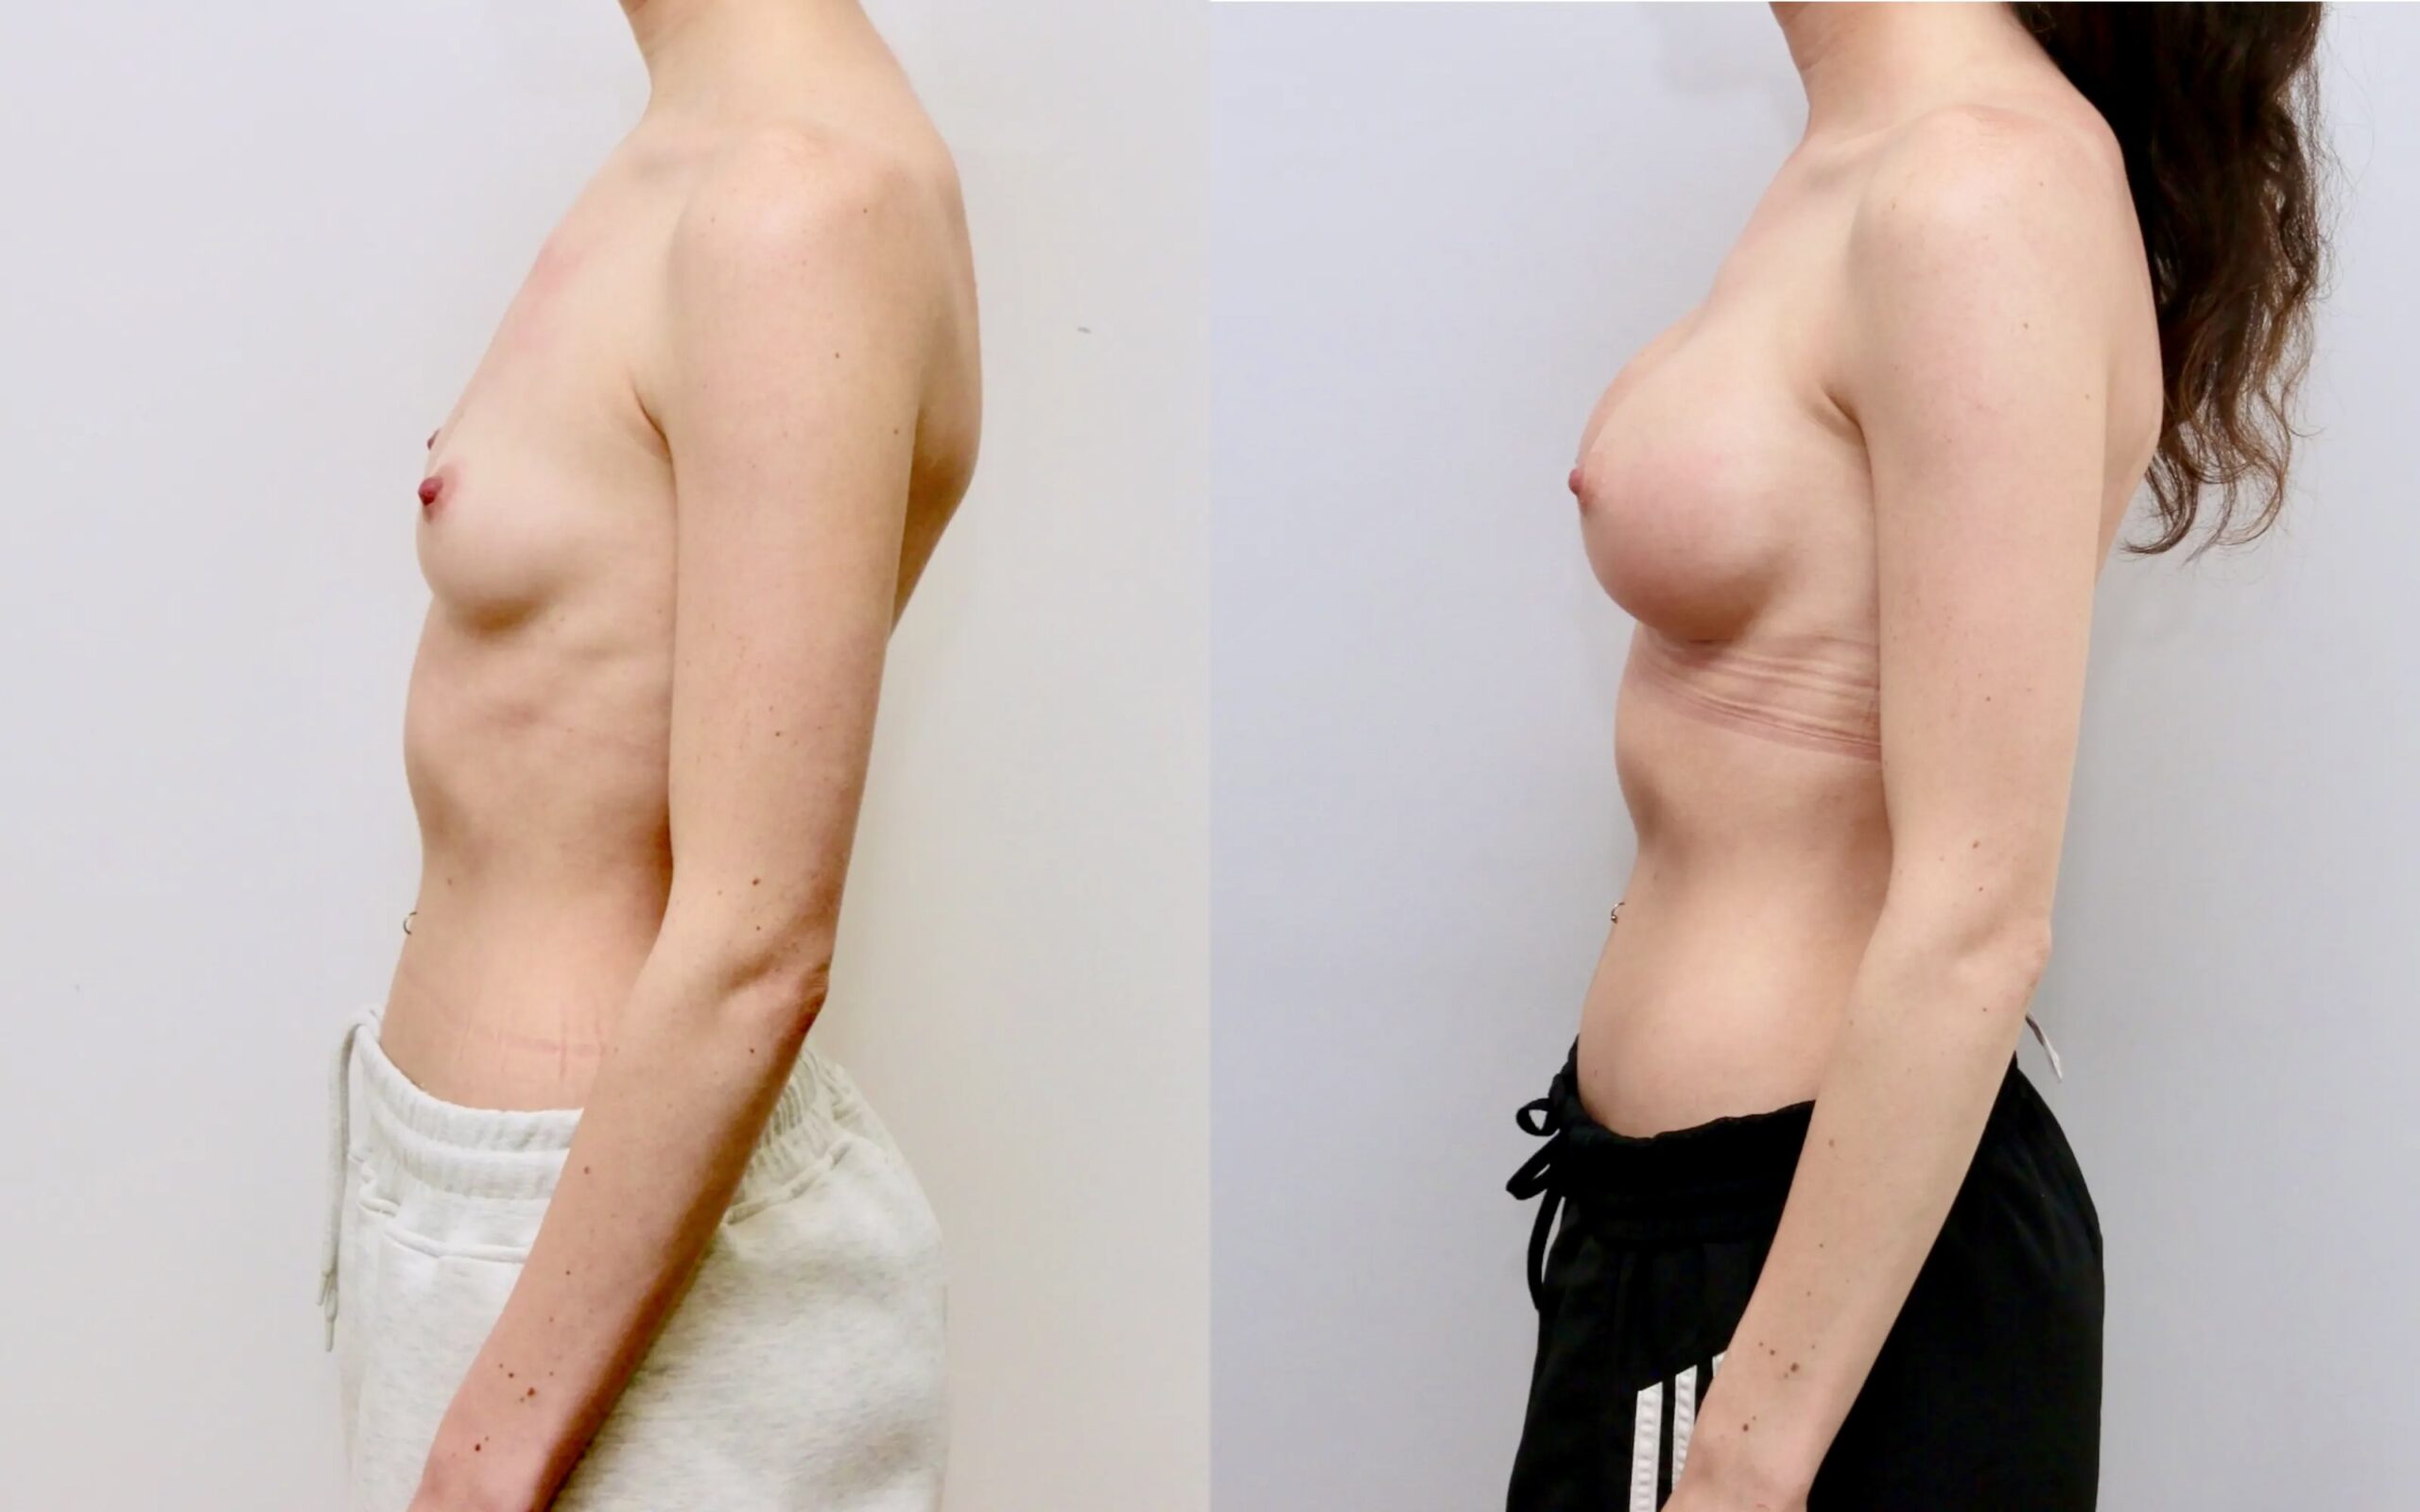 Small volume breast augmentation